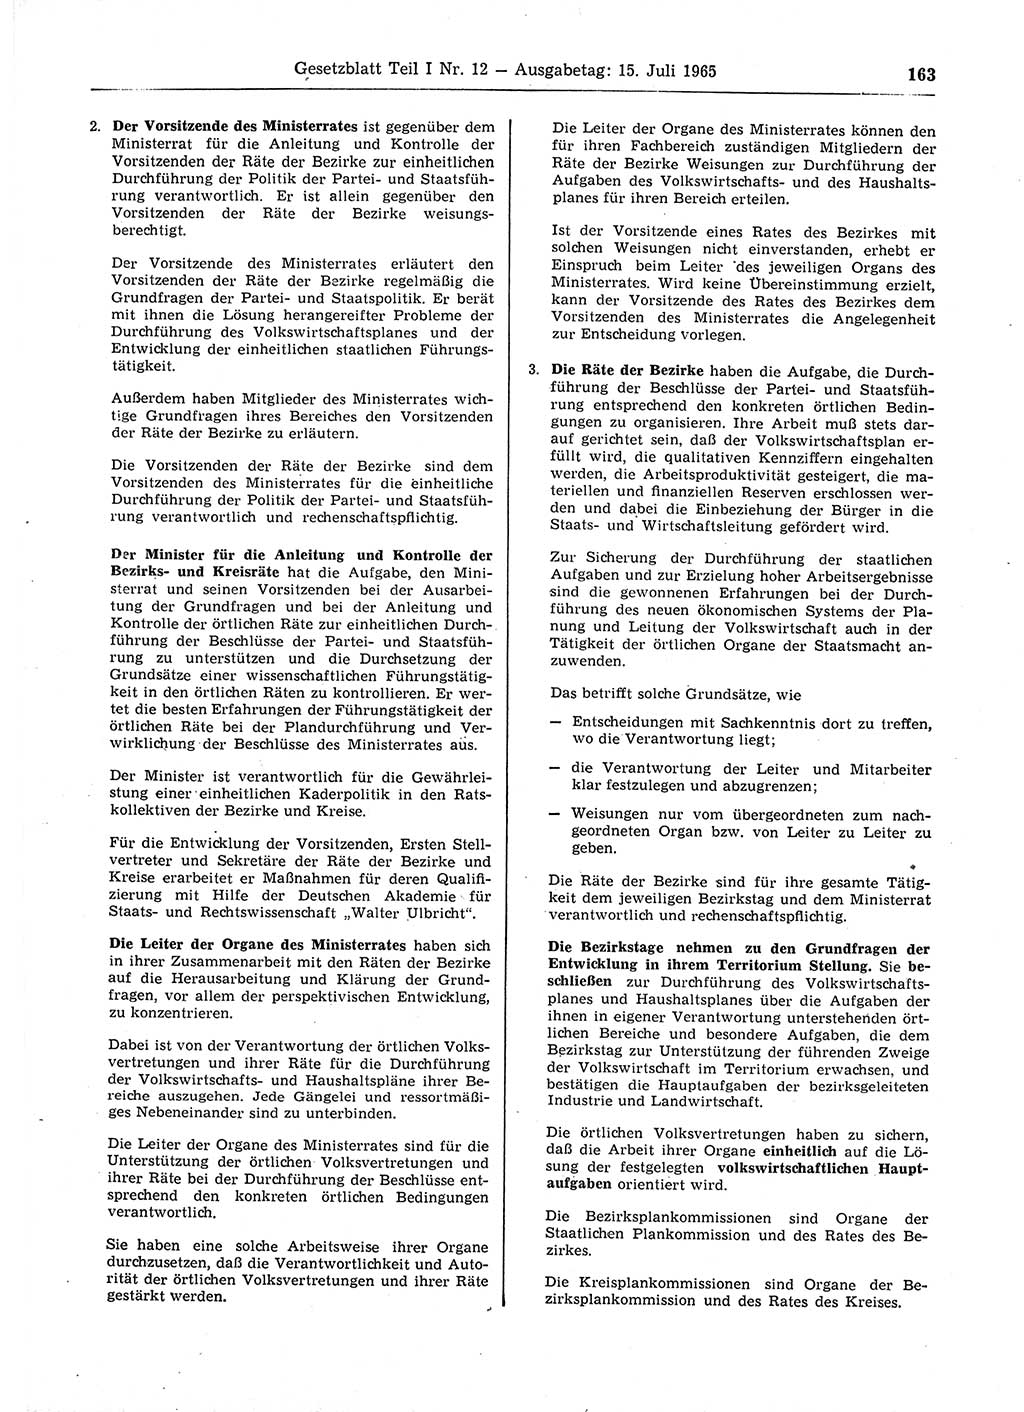 Gesetzblatt (GBl.) der Deutschen Demokratischen Republik (DDR) Teil Ⅰ 1965, Seite 163 (GBl. DDR Ⅰ 1965, S. 163)